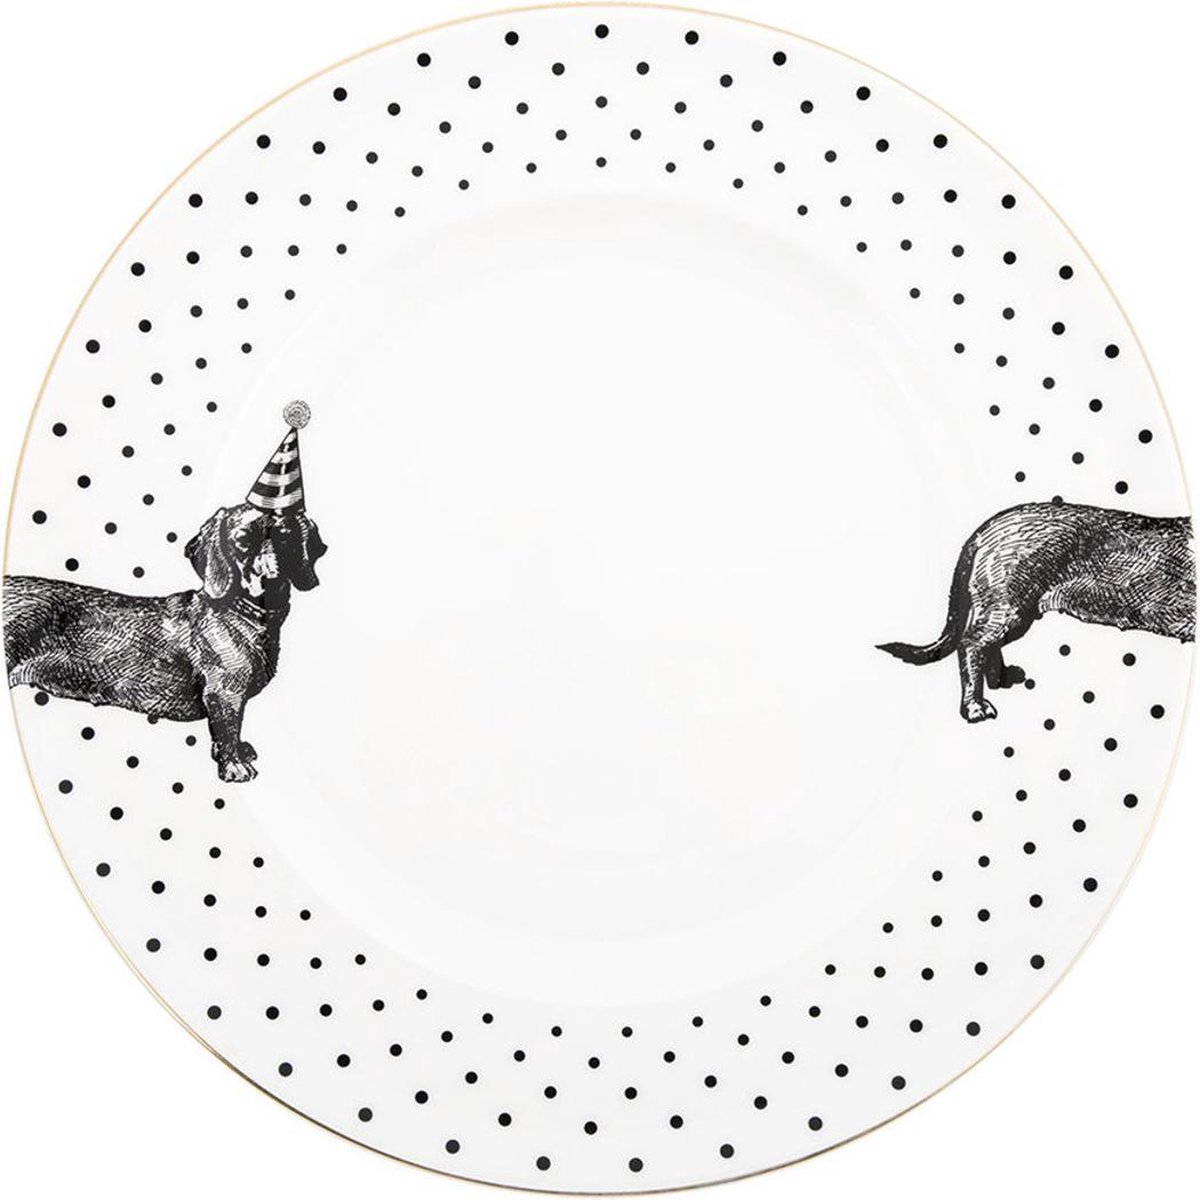 Yvonne Ellen London Monochrome Set/2 Diner borden Ø 26,5 cm -Teckel Print - Bone China Porselein - zwart/wit servies dieren - illustratie hond